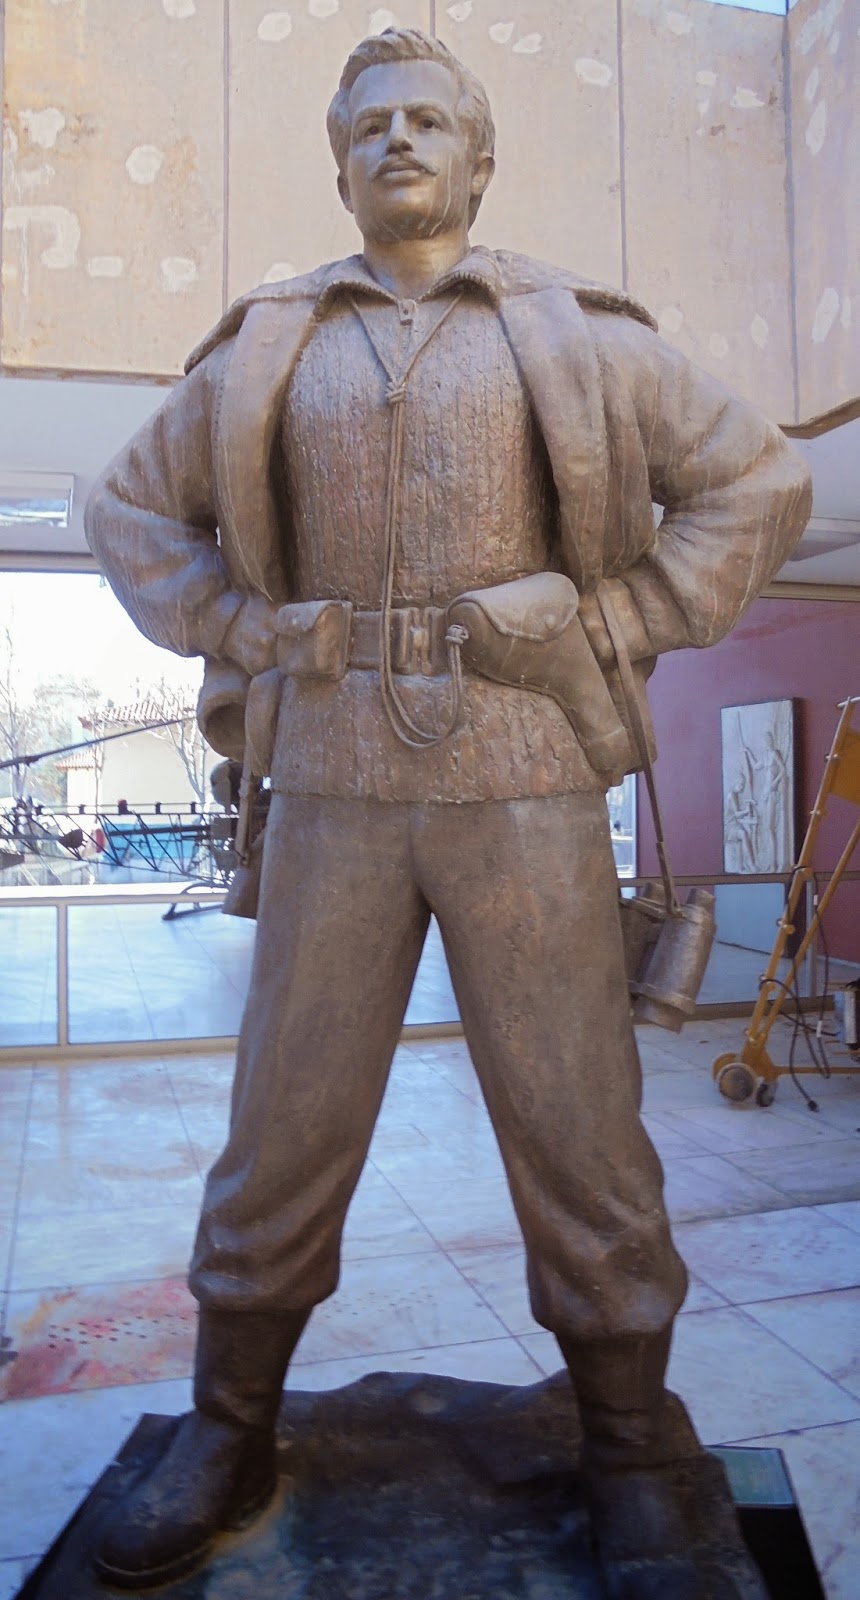 ο ανδριάντας του Γρηγόρη Αυξεντίου στο Πολεμικό Μουσείο των Αθηνών